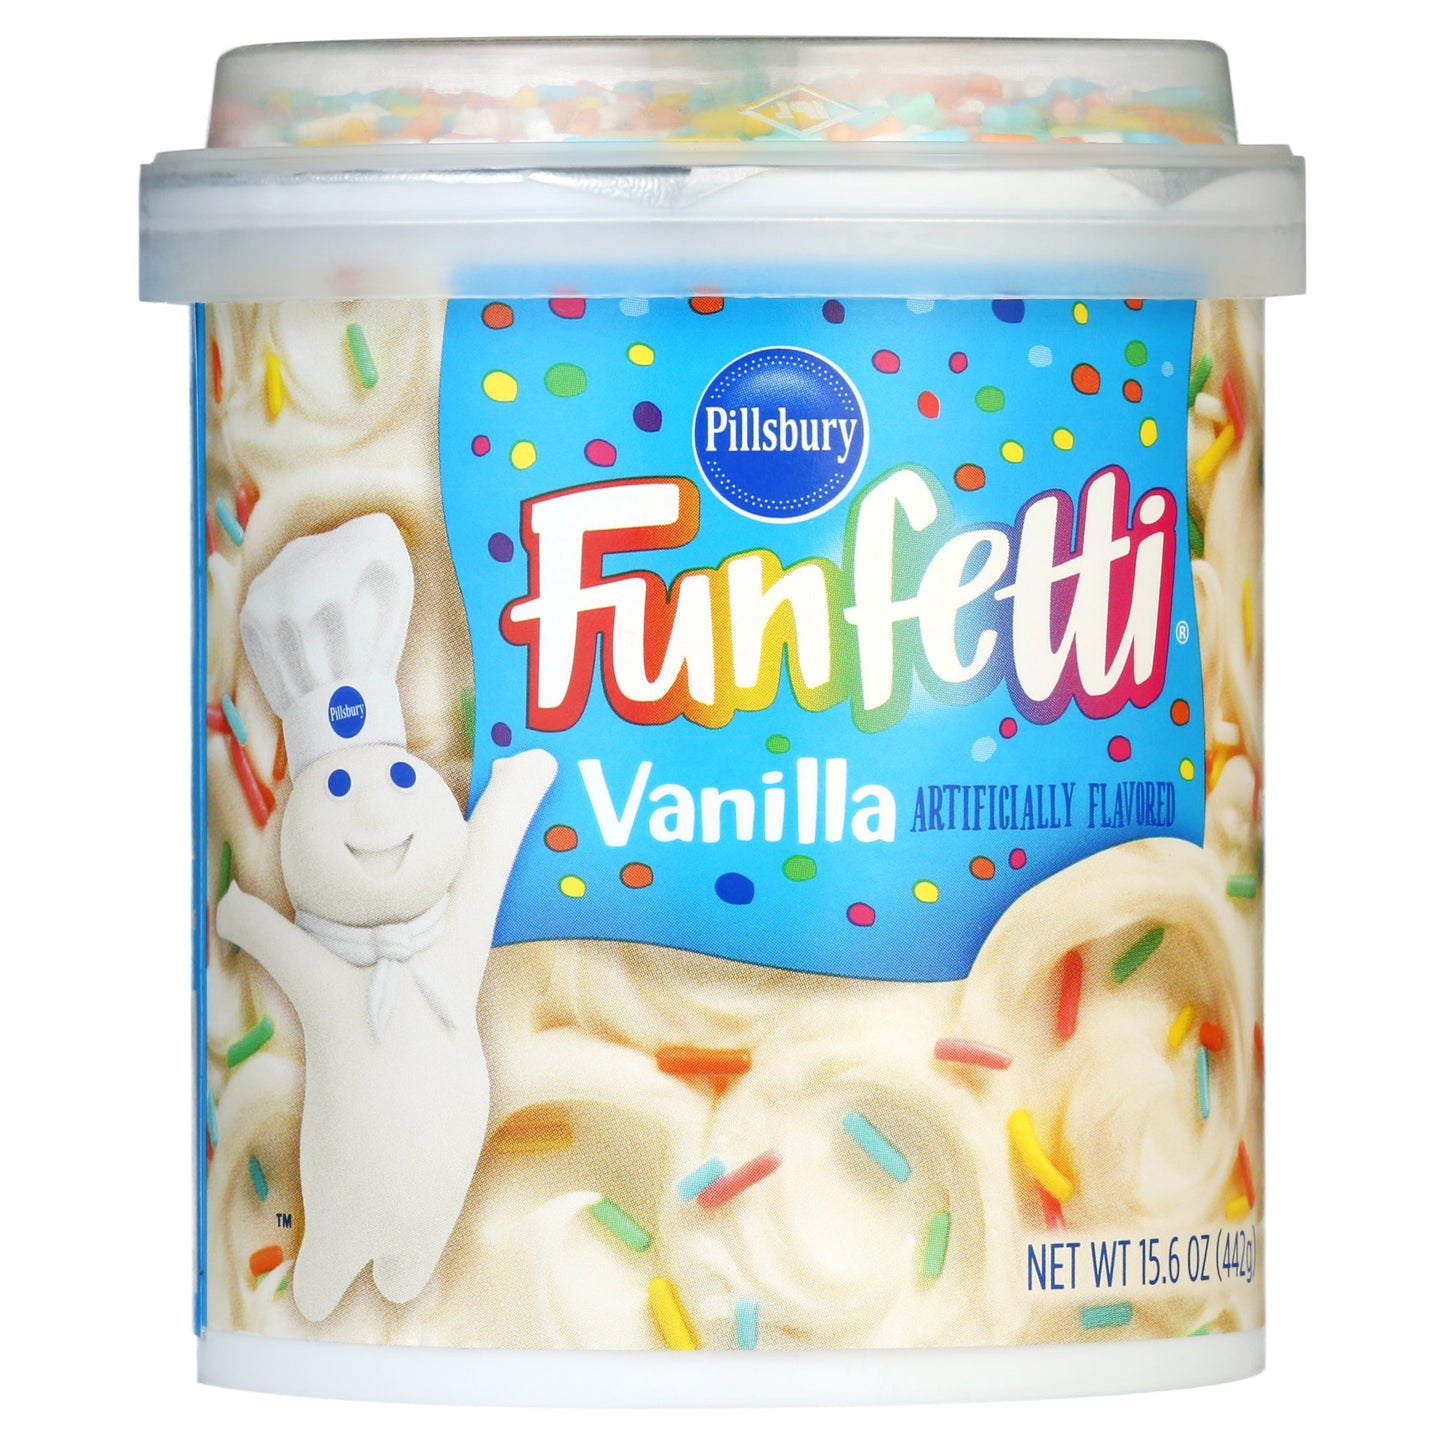 Pillsbury Funfetti Vanilla Frosting - Original 15.6oz